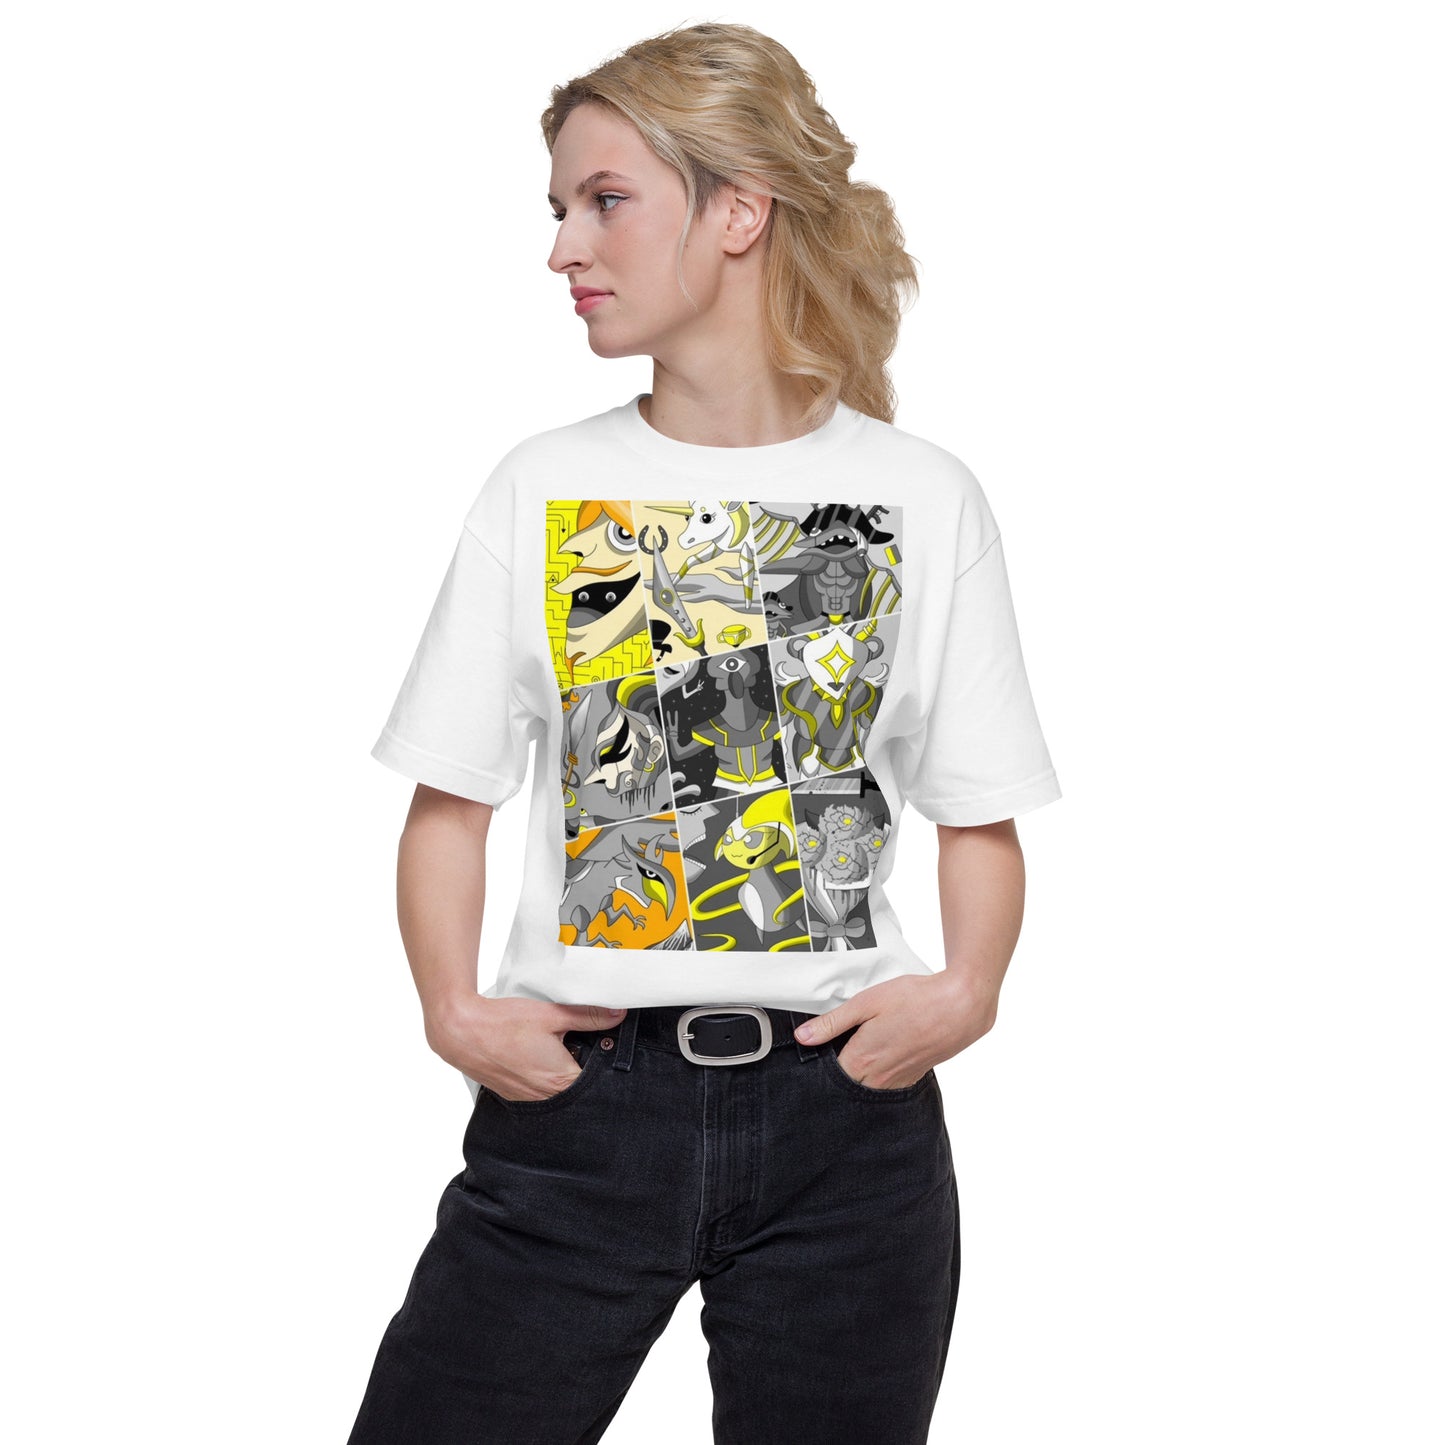 035_Ava-14-前面プリントTシャツ-アートをデザイン